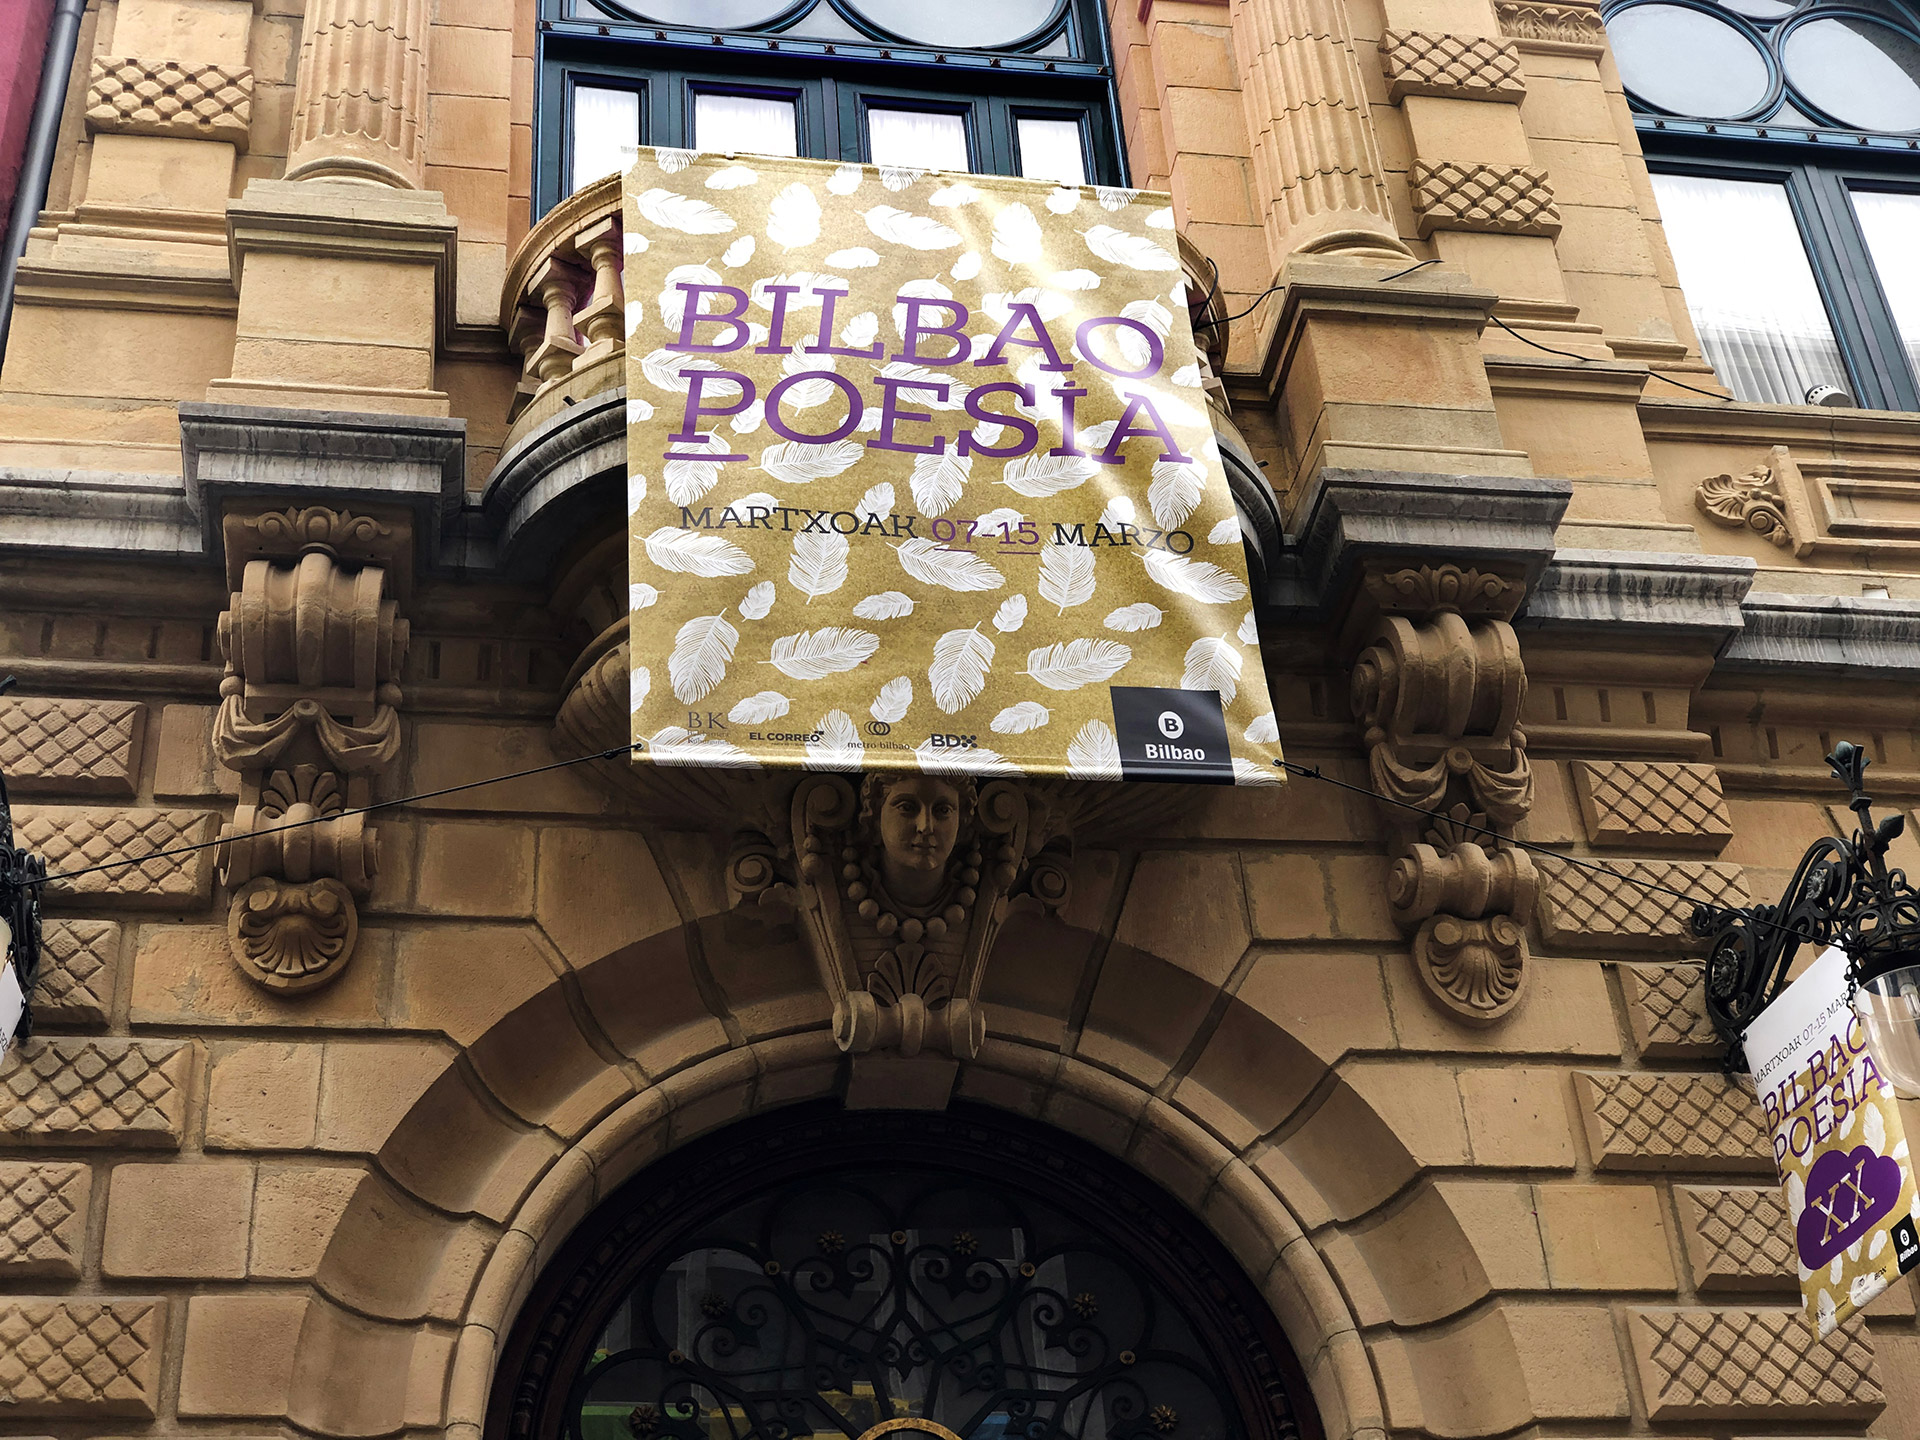 Bilbao poesía Cartel Comunicación Edificio Bilbao